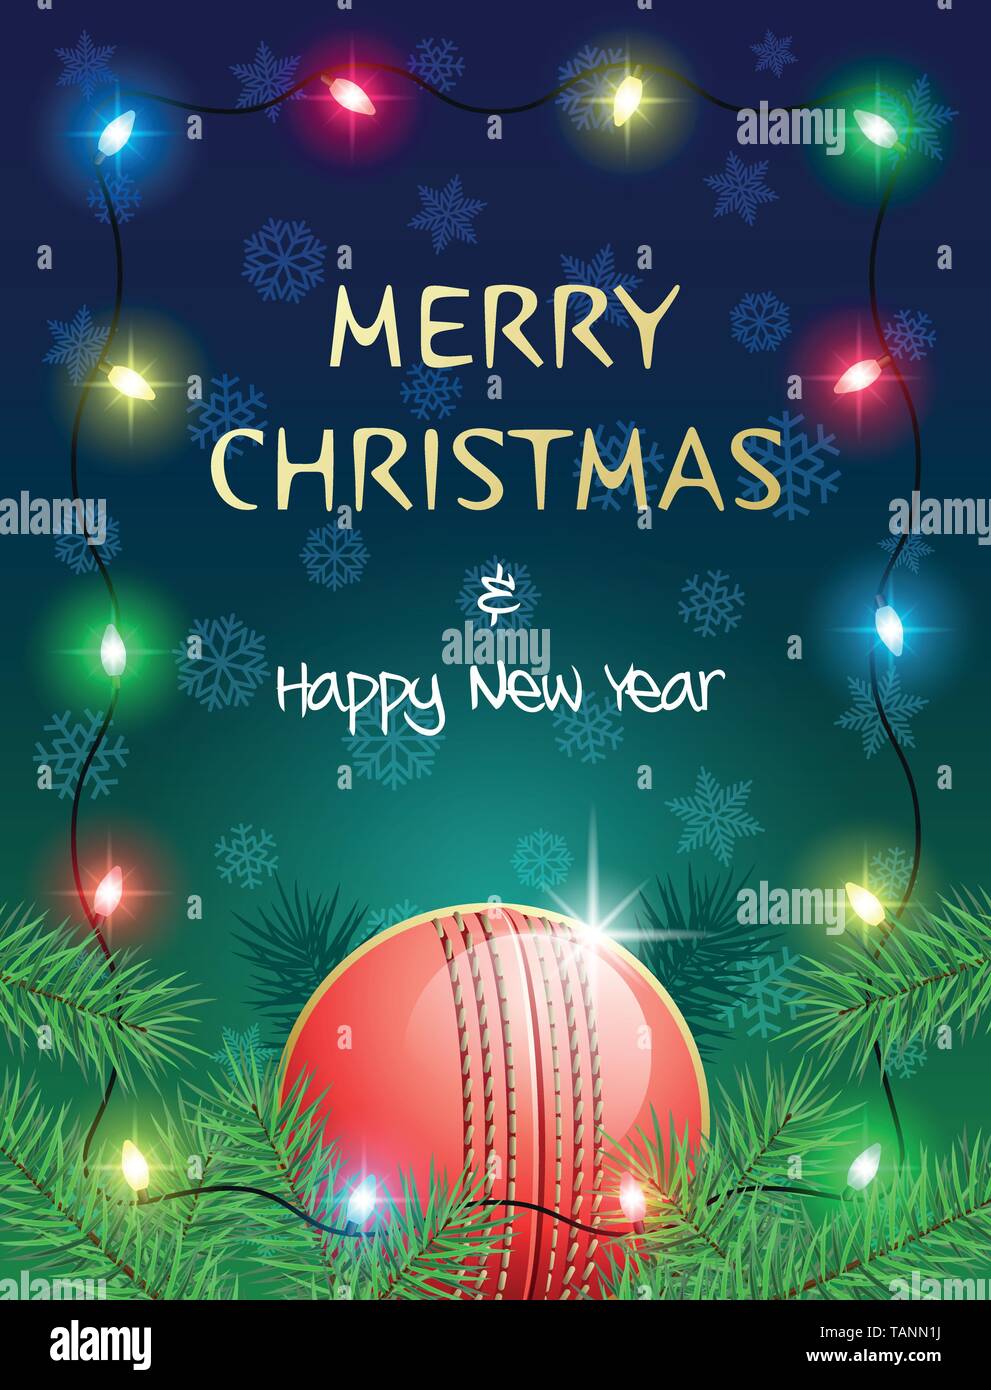 Feliz Navidad y Feliz Año Nuevo. Tarjeta de felicitación de deportes con bola de críquet y las luces de Navidad. Ilustración vectorial. Ilustración del Vector